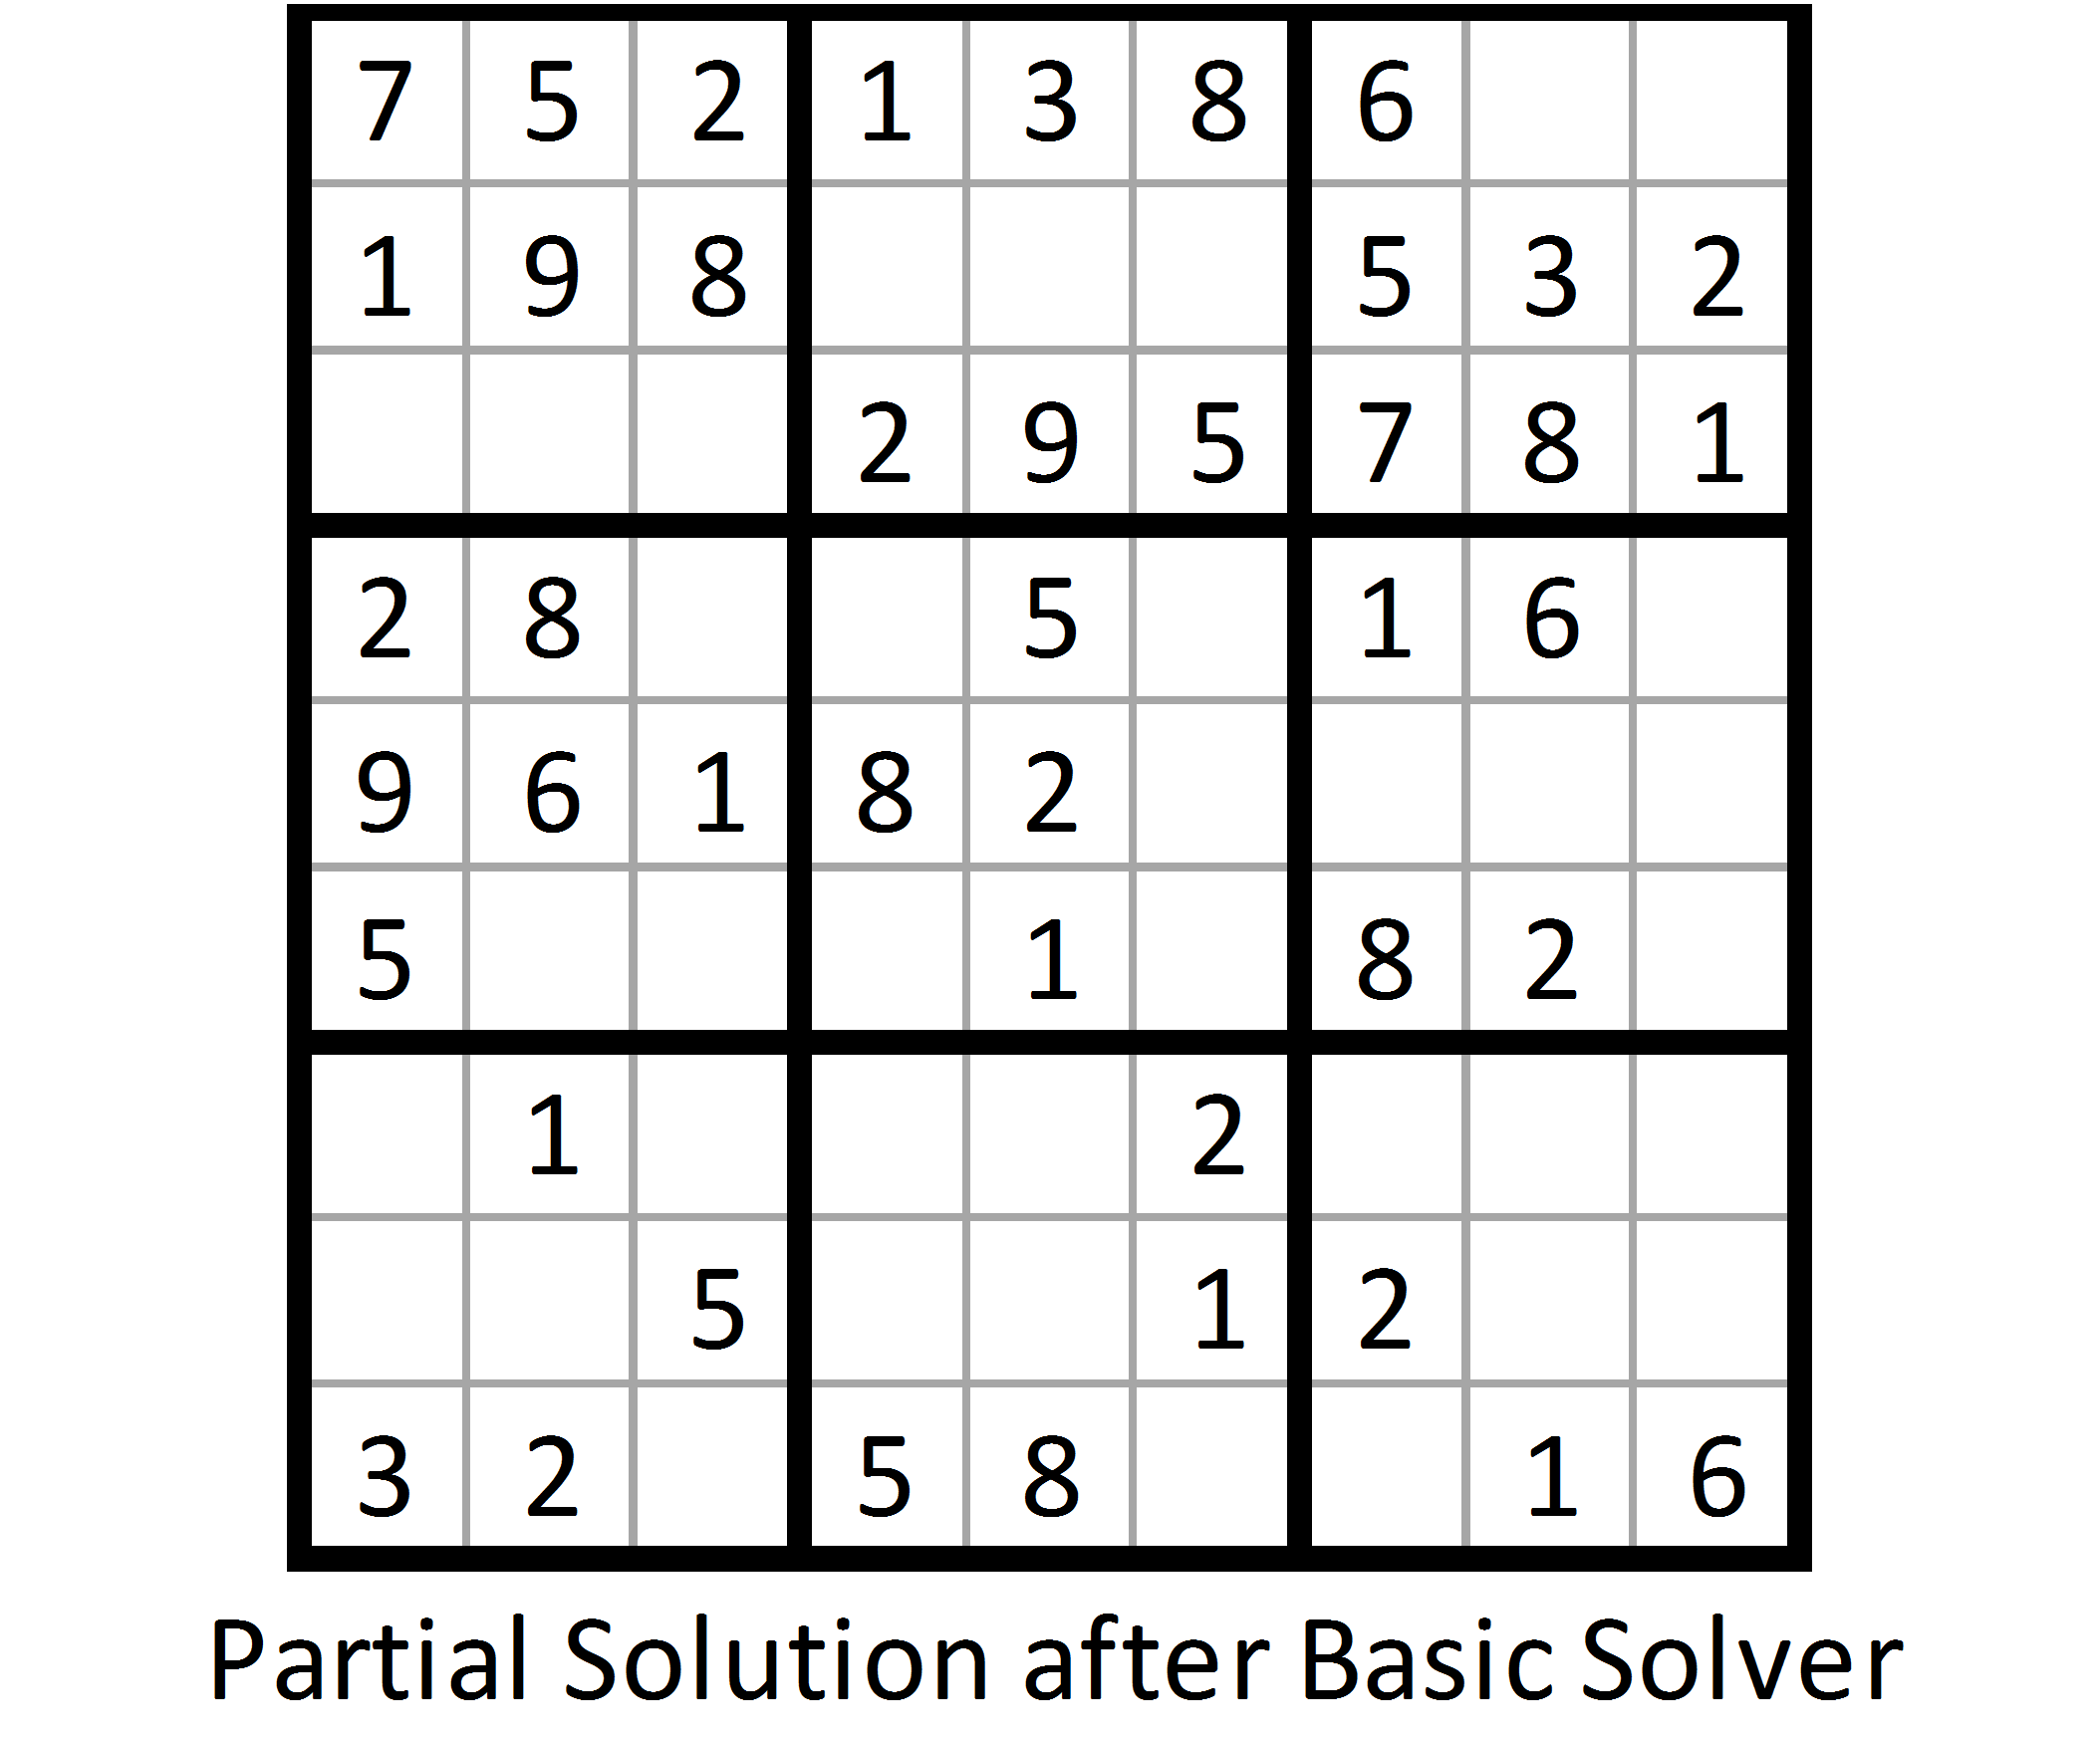 Sudoku Solver - A Visualizer made using Backtracking Algorithm